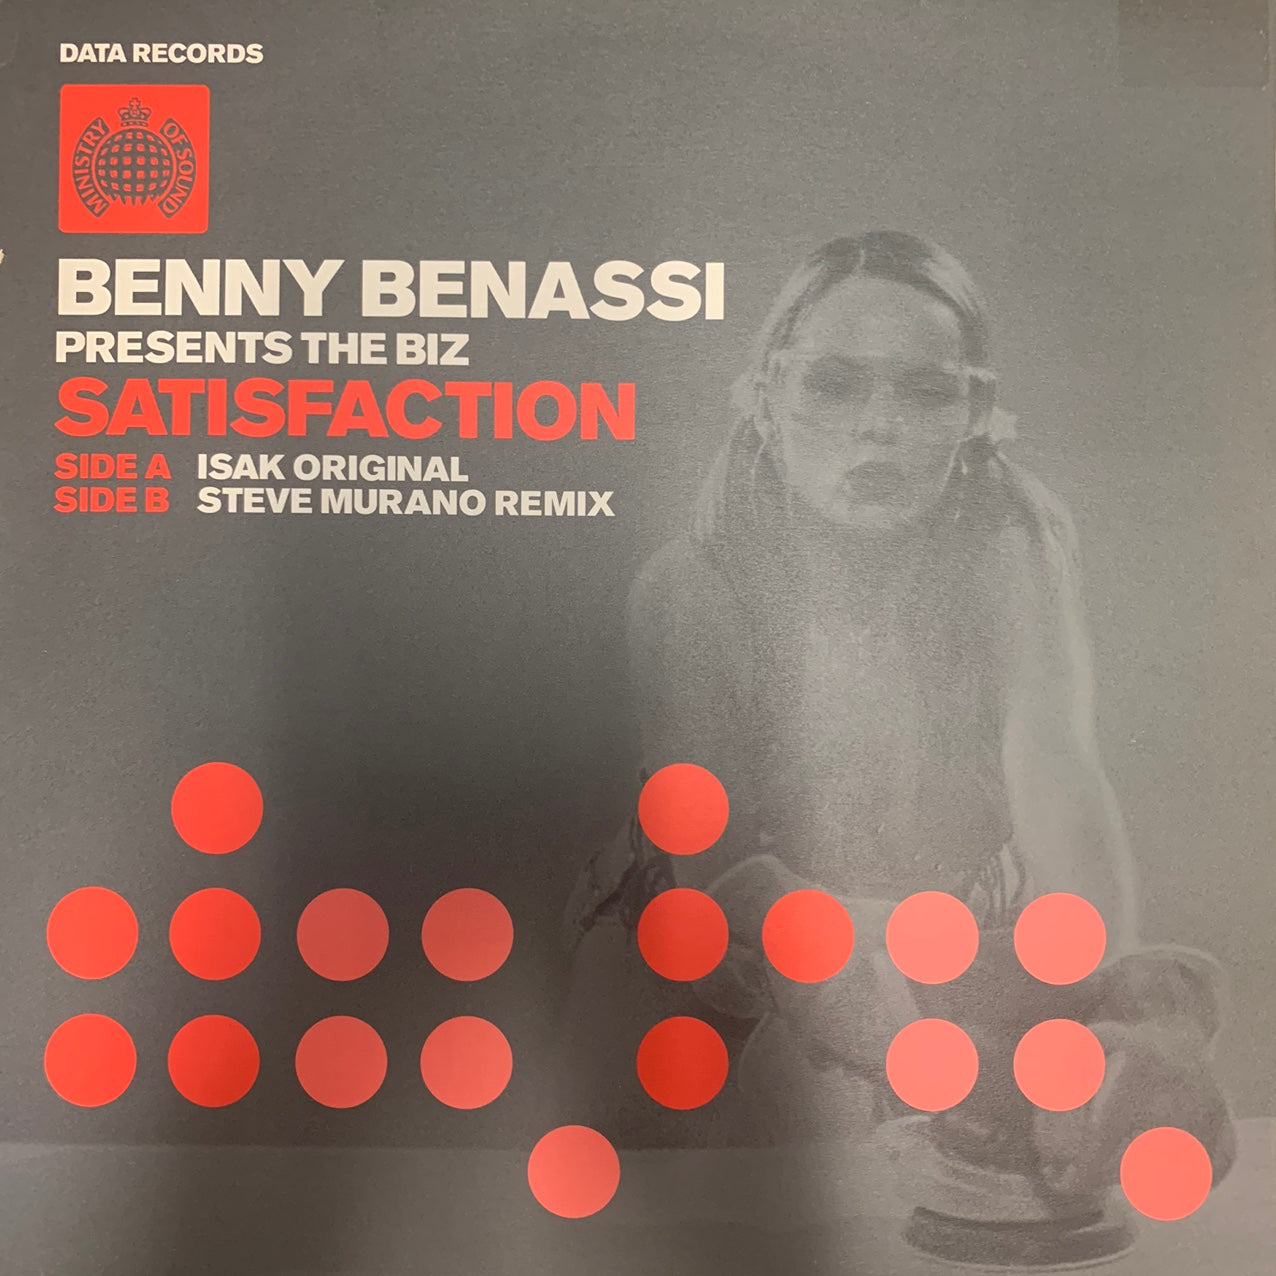 Benny Benassi Presents The Biz “Satisfaction”